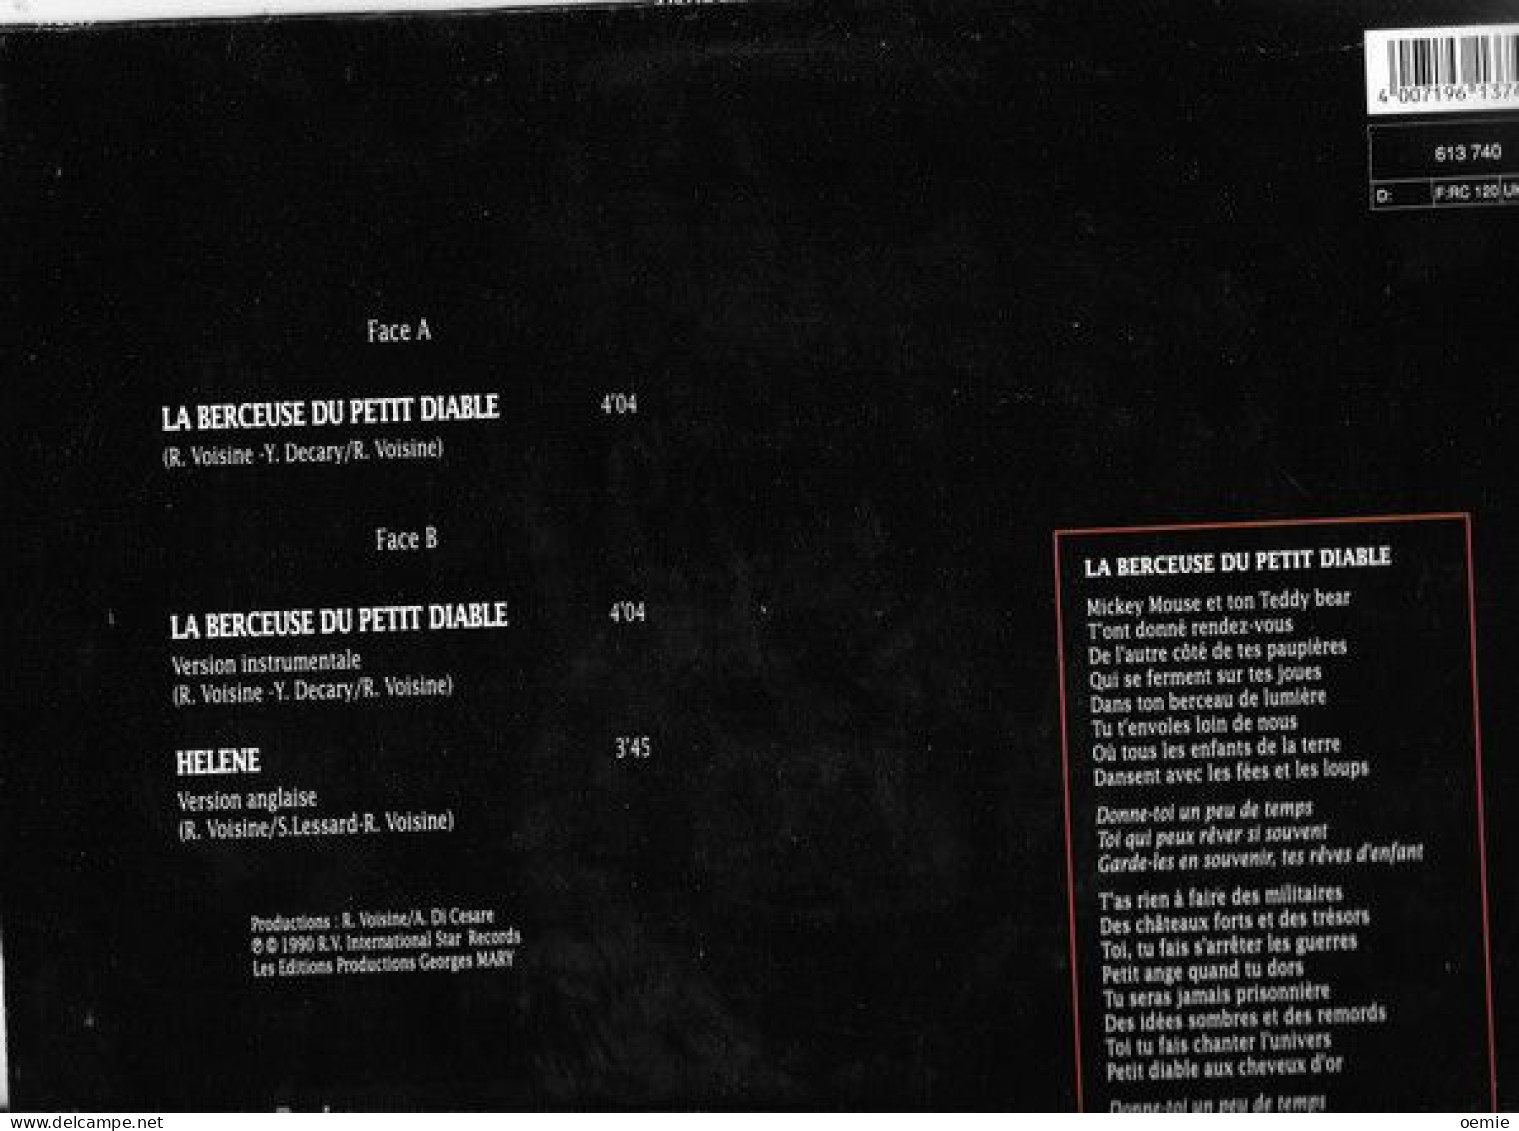 ROCH VOISINE ° LA BERCEUSE DU PETIT DIABLE - 45 Rpm - Maxi-Single